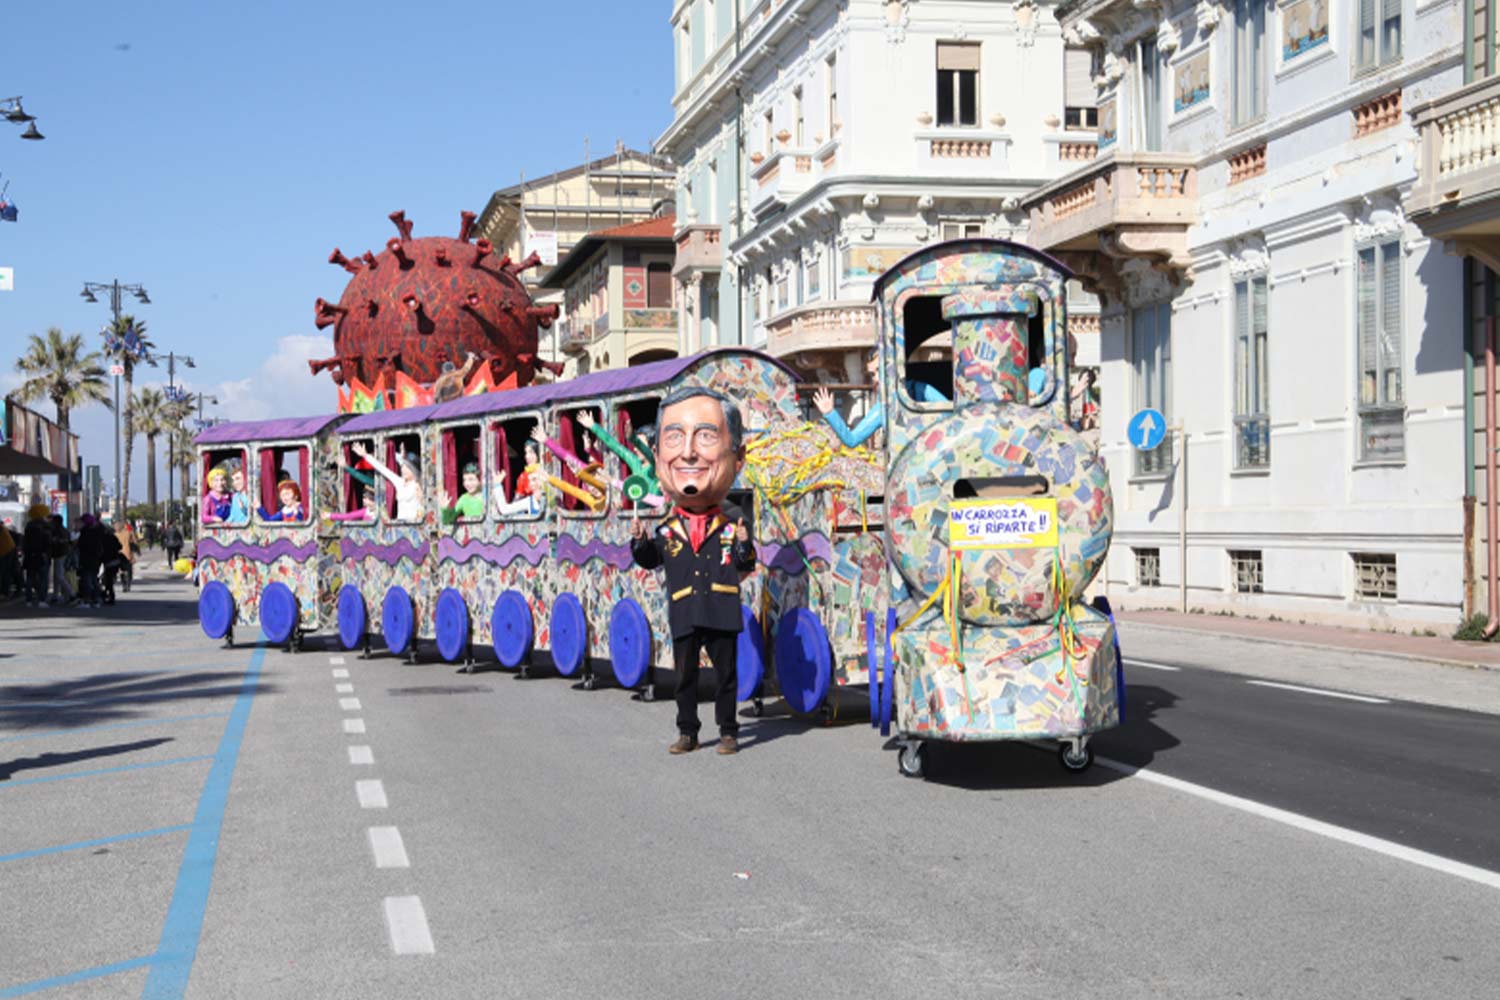 In carrozza si riparte di Giampiero Ghiselli e Maria Chiara Franceschini. Mascherate in Gruppo Viareggio 2022 ©Fondazione Carnevale di Viareggio